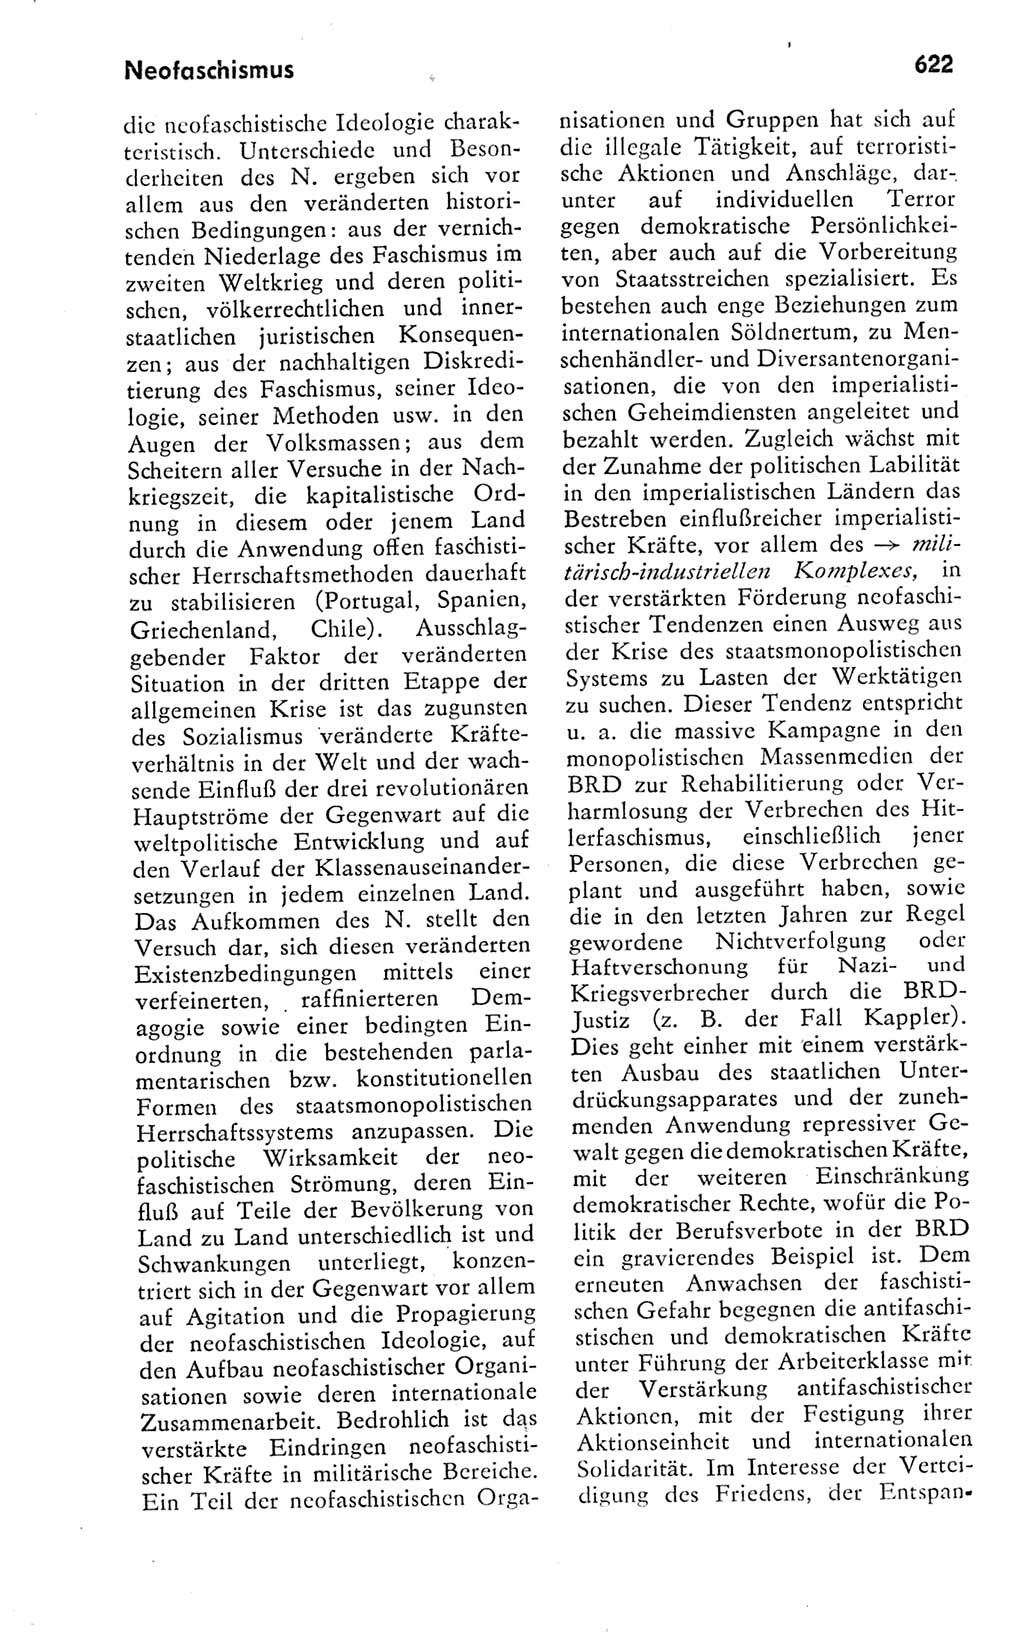 Kleines politisches Wörterbuch [Deutsche Demokratische Republik (DDR)] 1978, Seite 622 (Kl. pol. Wb. DDR 1978, S. 622)